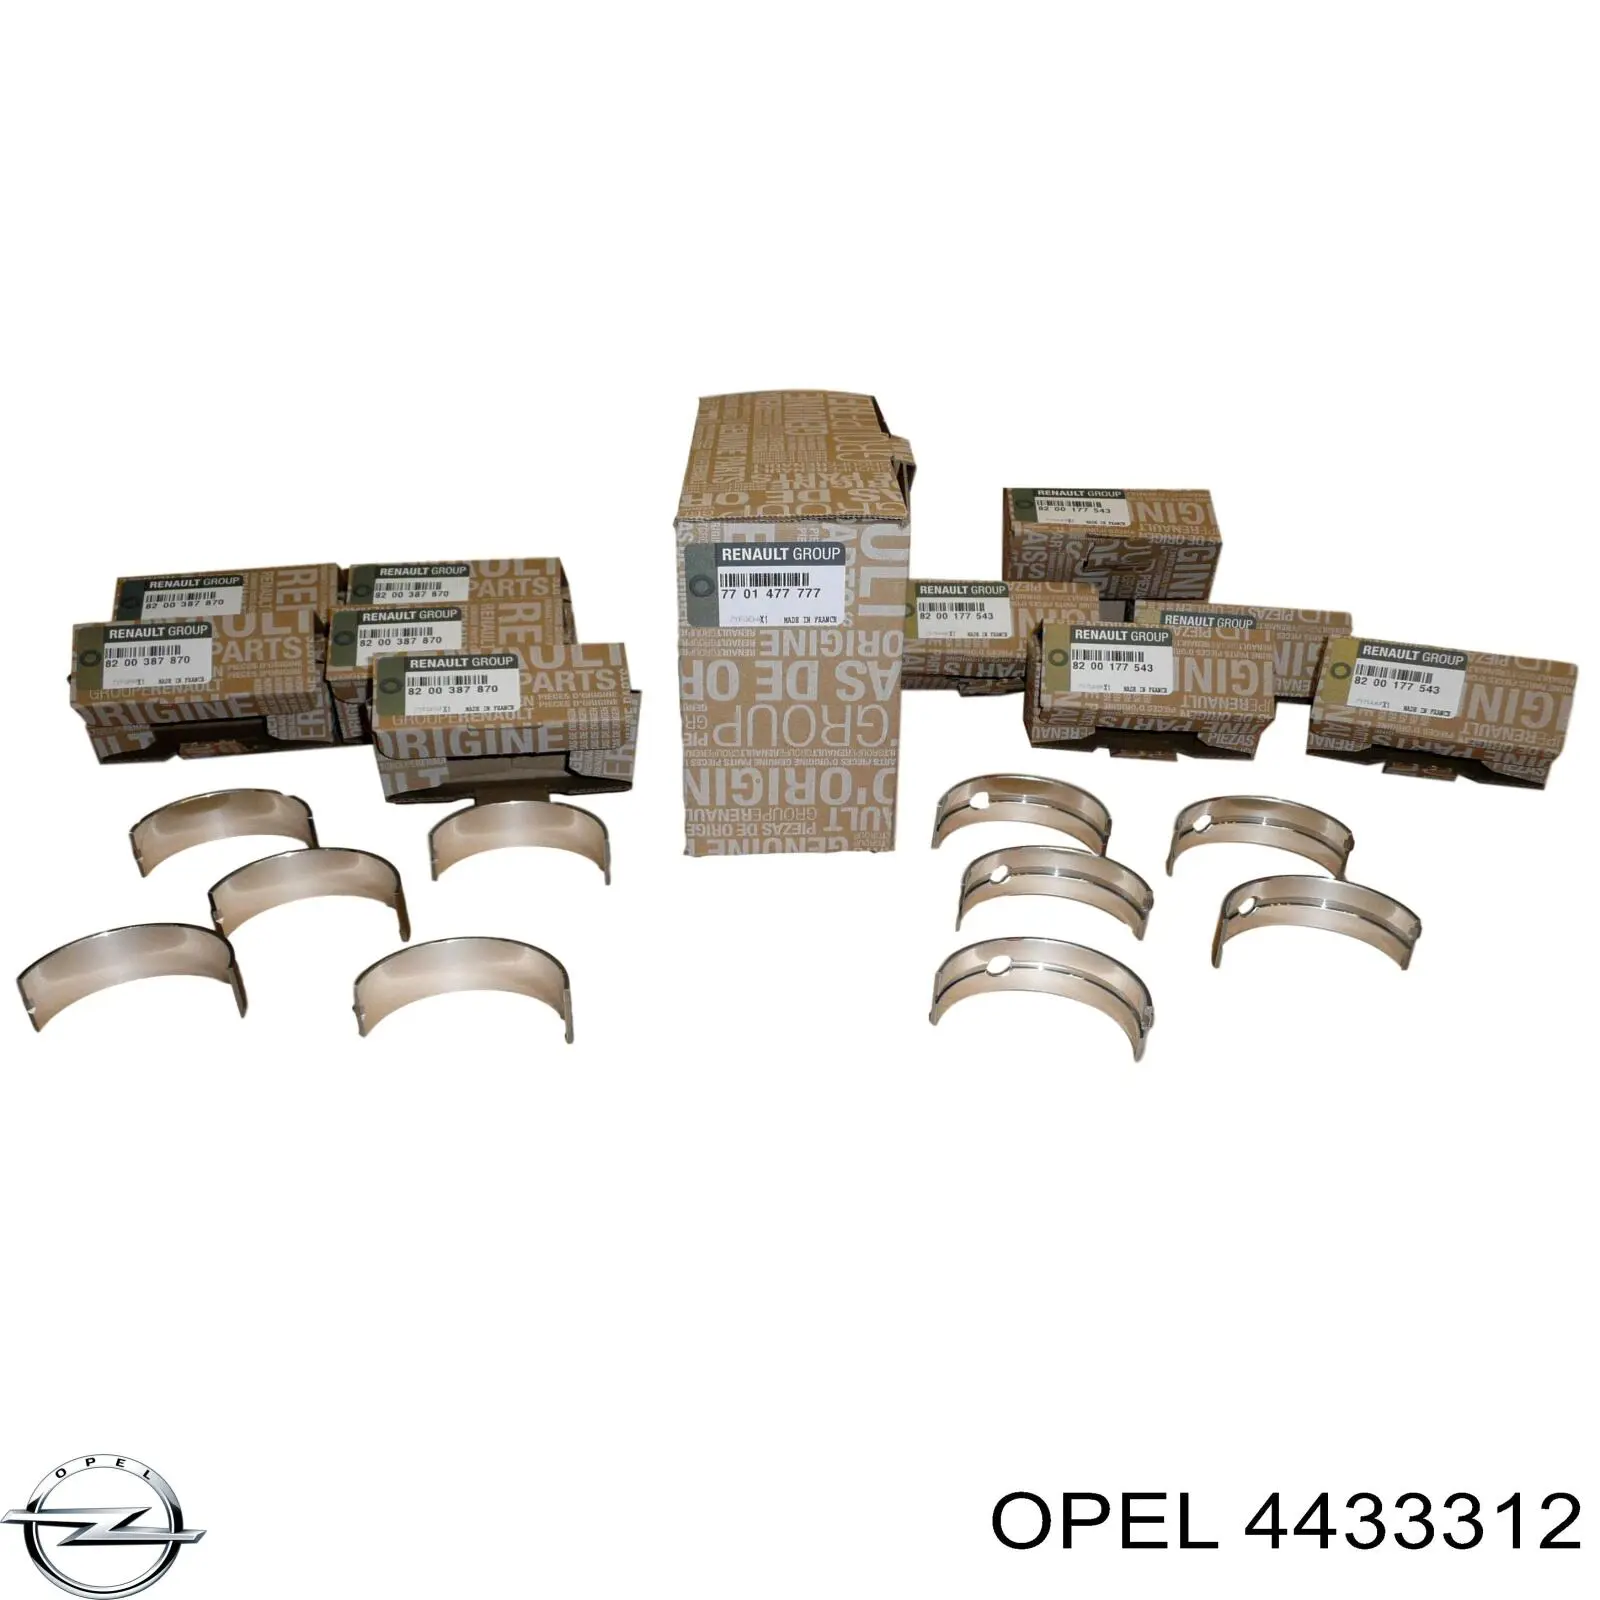 4433312 Opel вкладиші колінвала, корінні, комплект, стандарт (std)